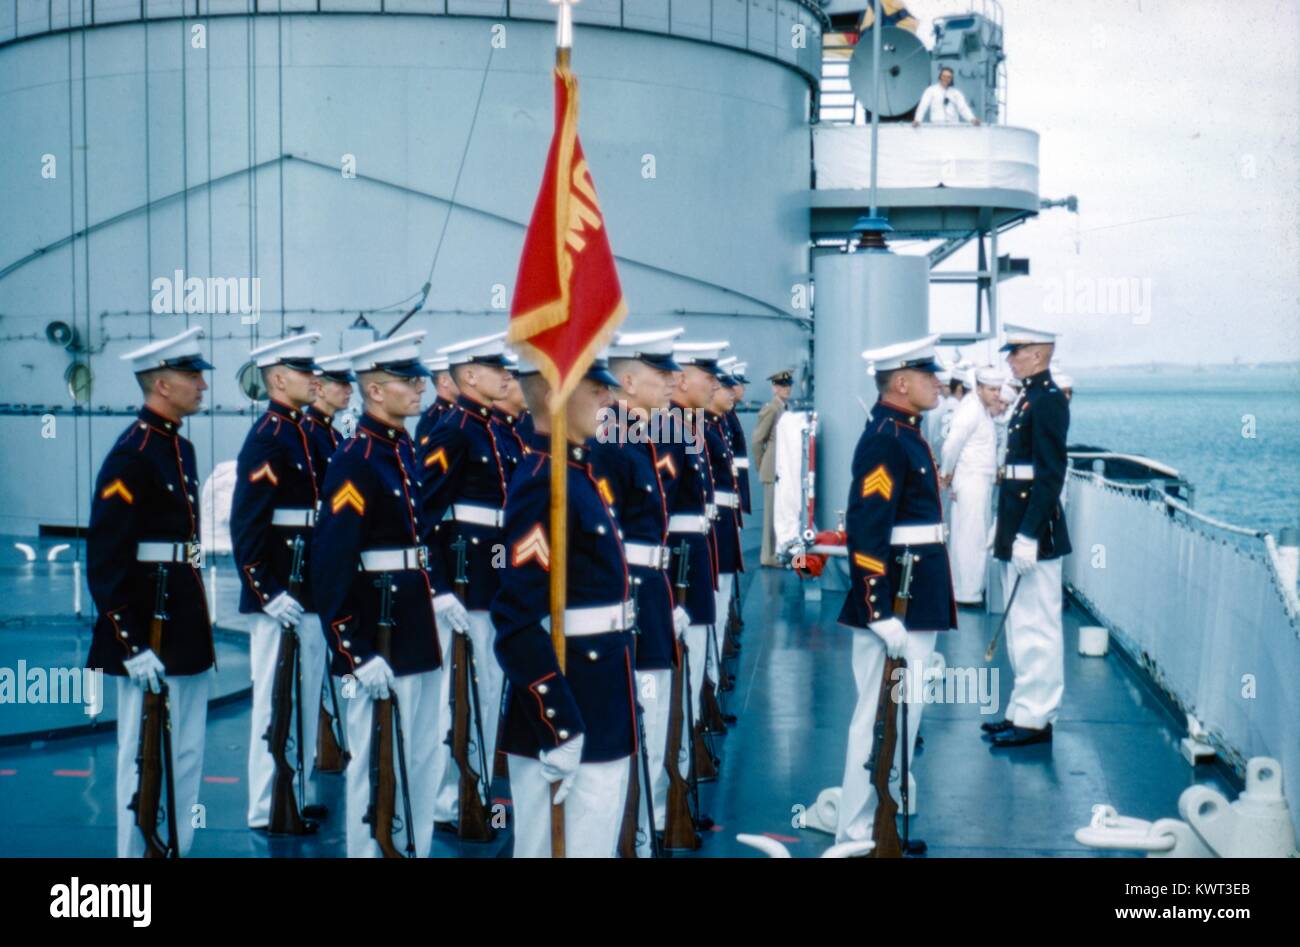 Un grupo de Infantería de Marina de Estados Unidos (USMC) miembros en uniforme stand en la atención y presentar una bandera a bordo de un buque, con los marineros de la Marina de los Estados Unidos en el fondo, 1958. () Foto de stock